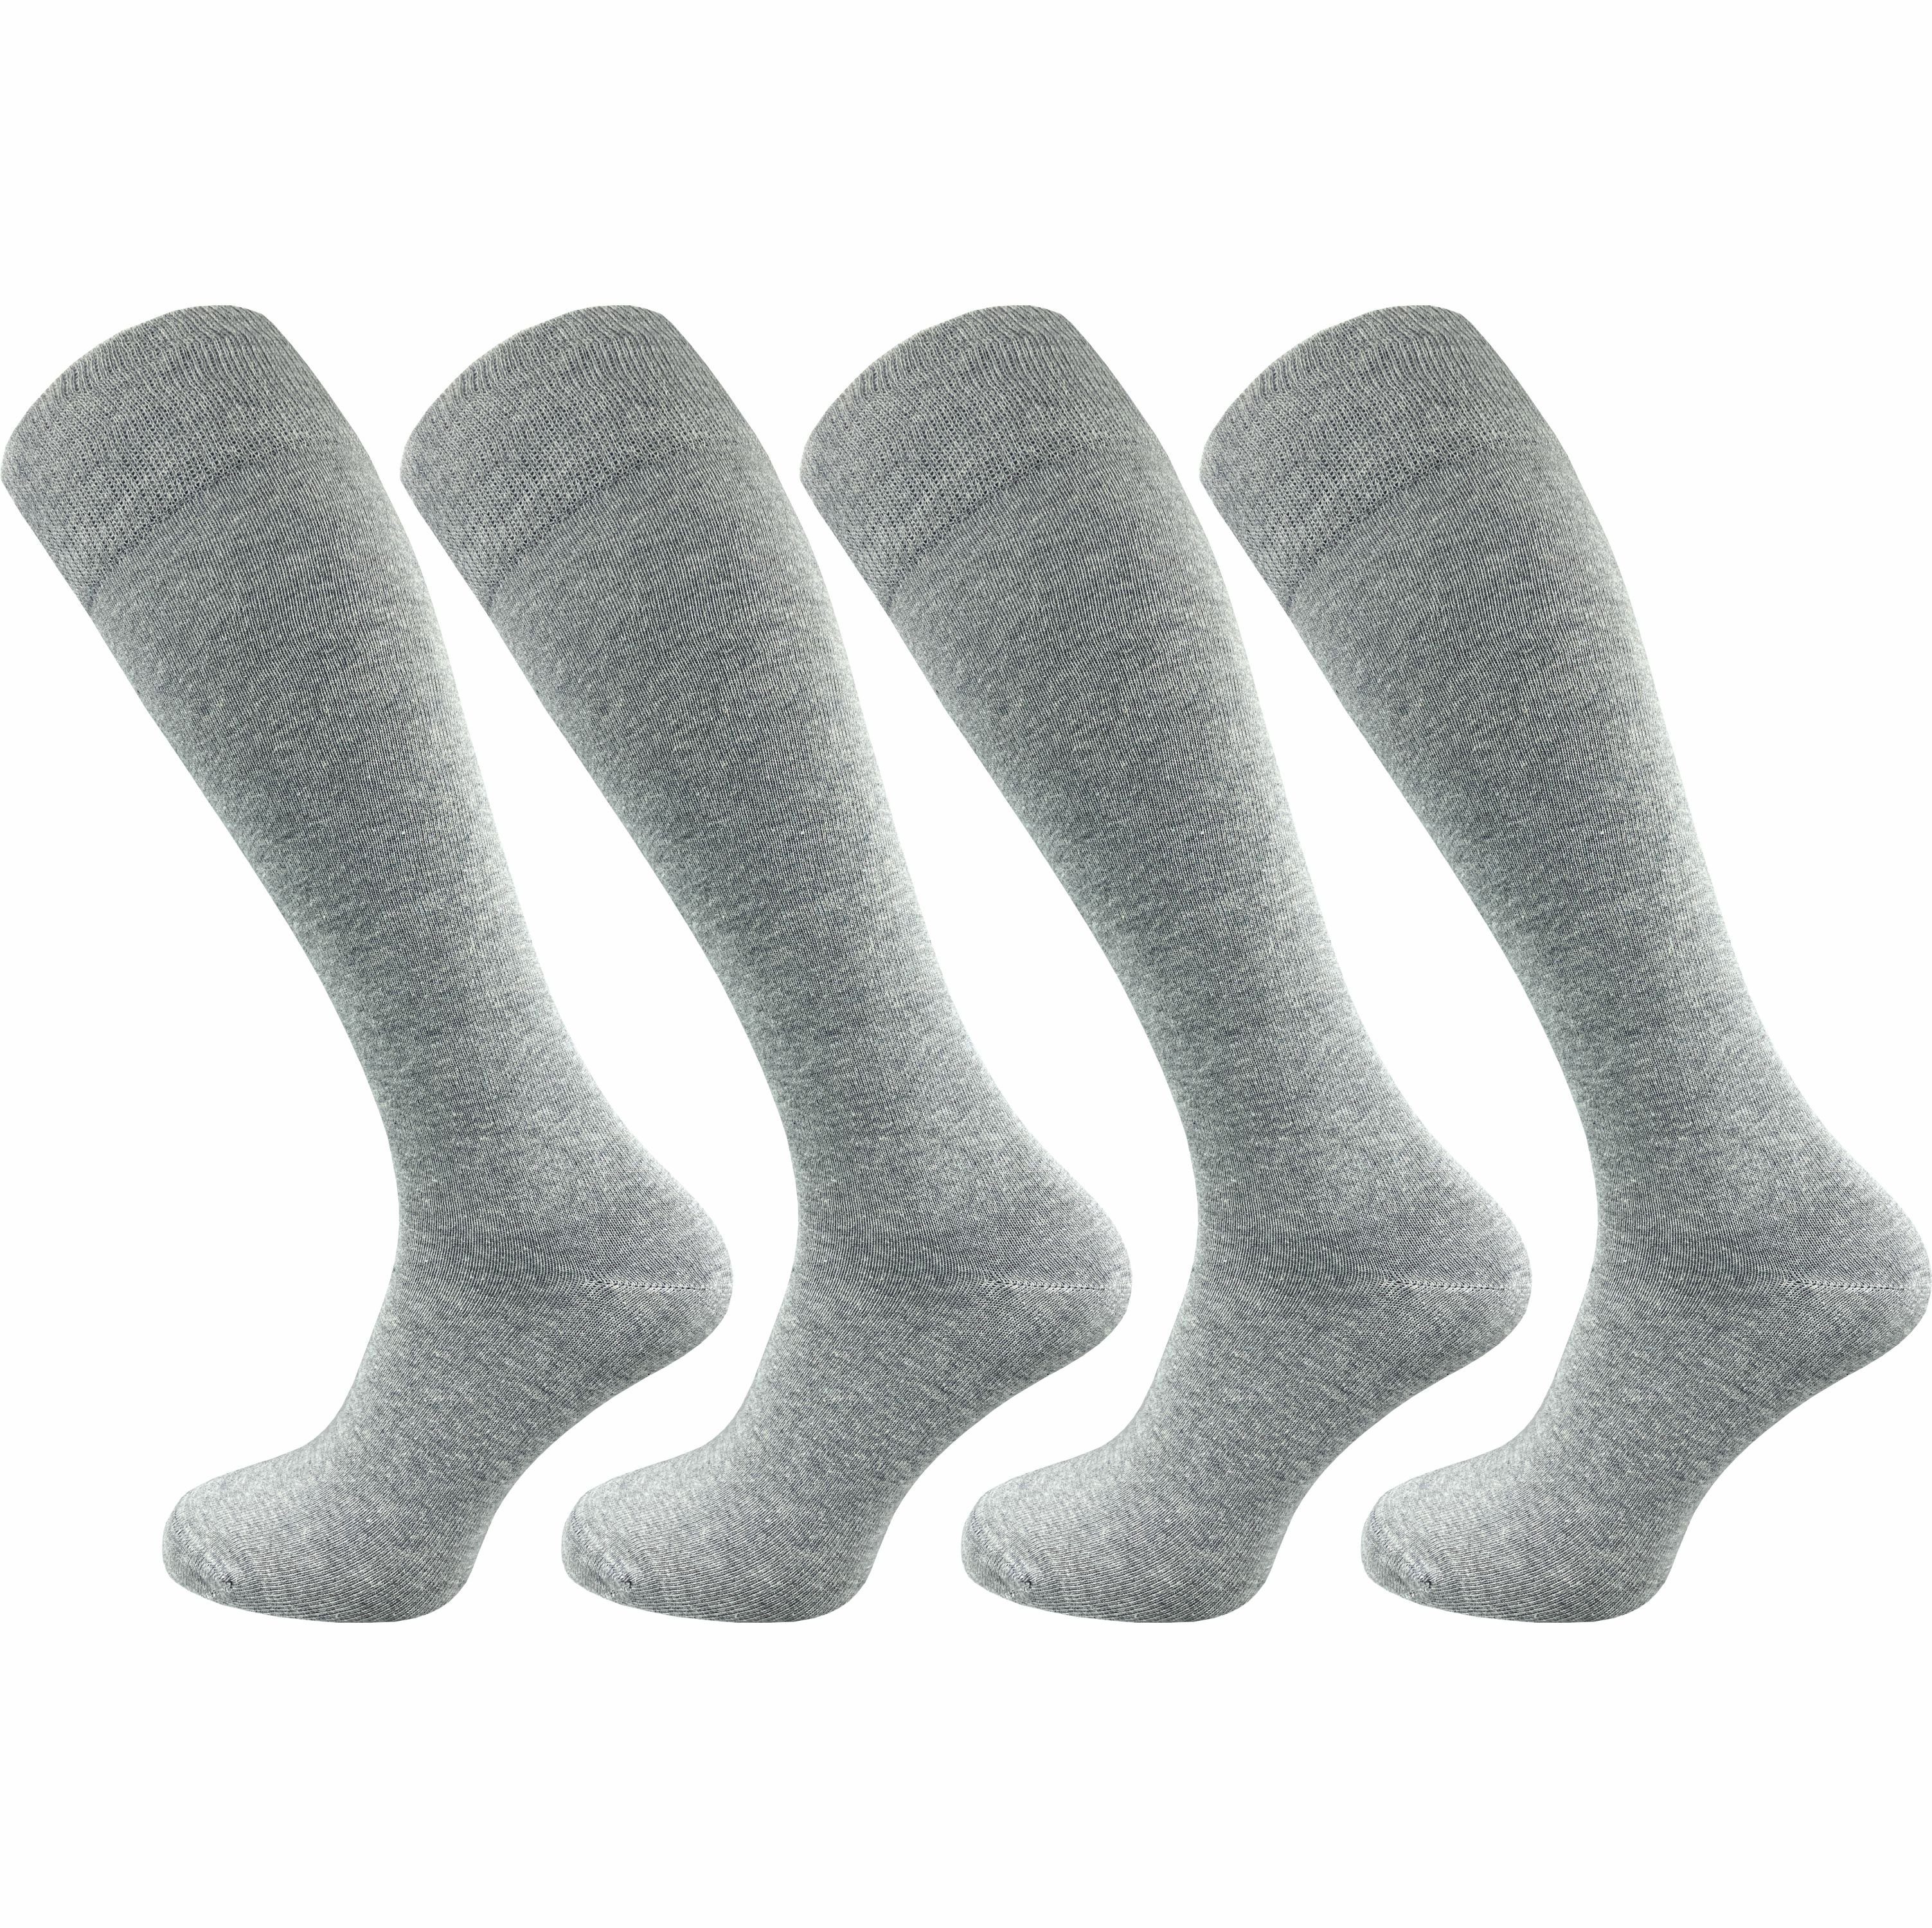 GAWILO Kniestrümpfe für Damen aus Baumwolle - extra weich & ohne drückende Naht (4 Paar) Lange Socken mit speziellem Komfortbund, der nicht einschneidet hellgrau